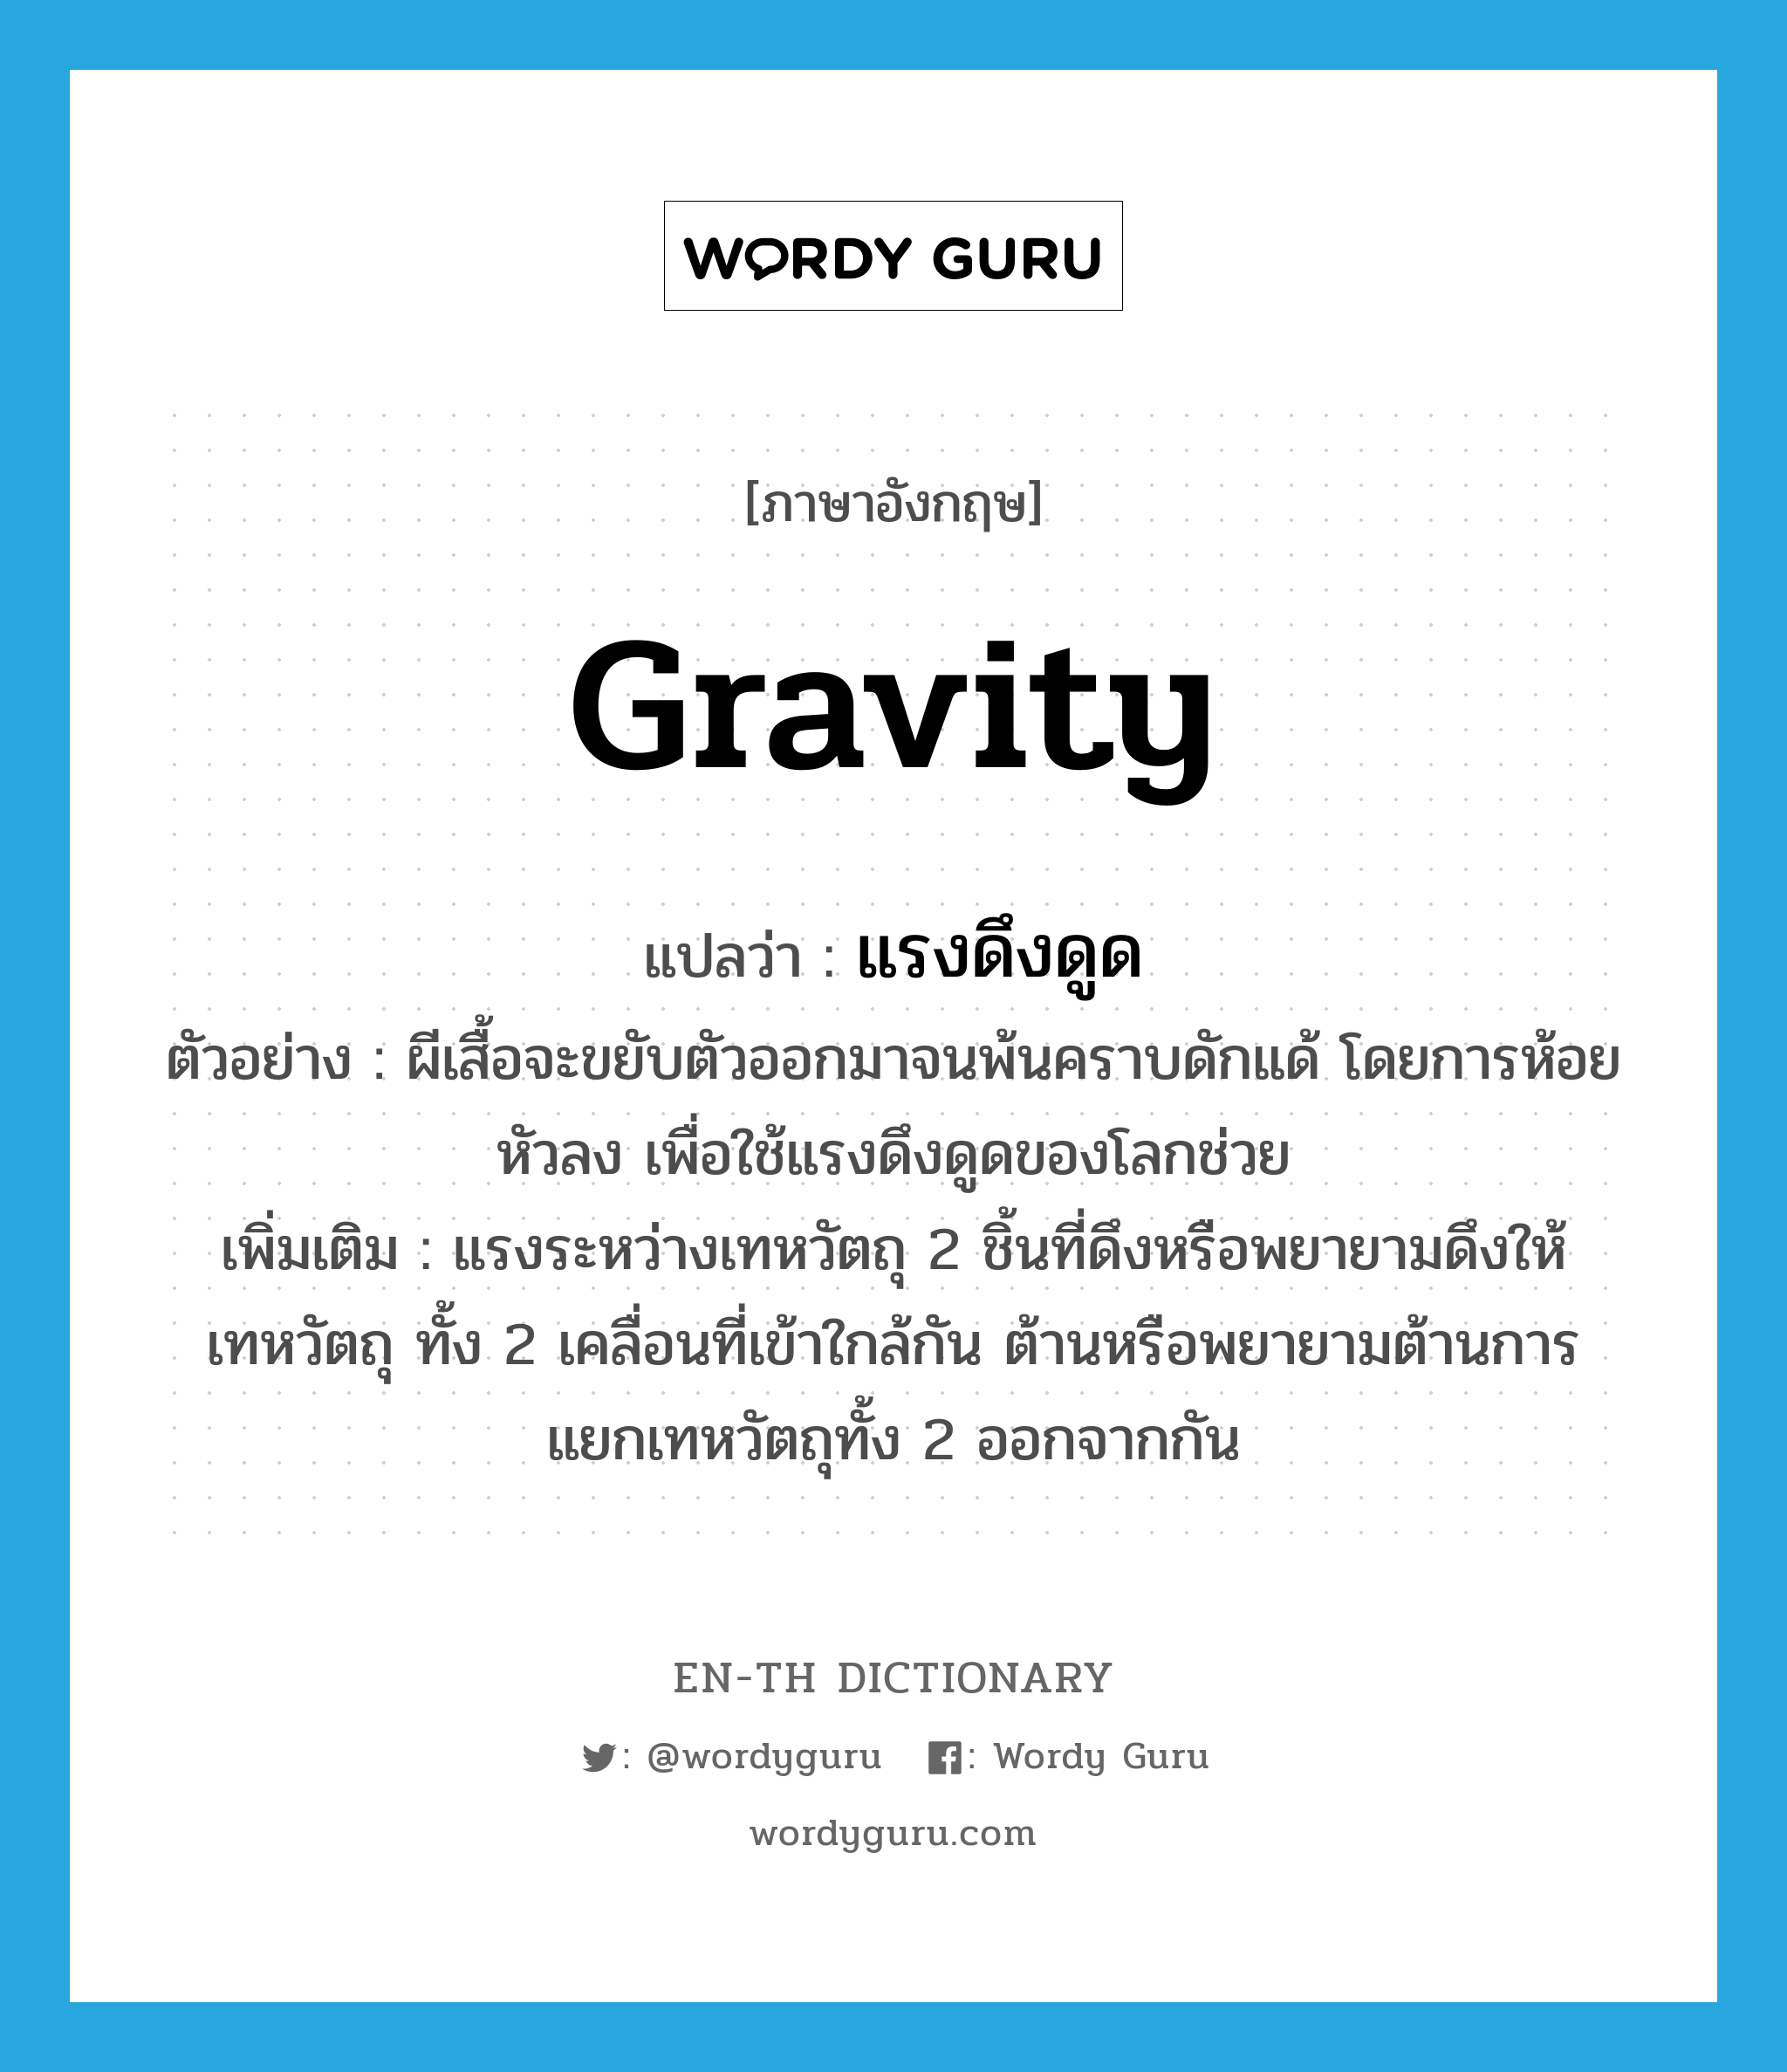 gravity แปลว่า?, คำศัพท์ภาษาอังกฤษ gravity แปลว่า แรงดึงดูด ประเภท N ตัวอย่าง ผีเสื้อจะขยับตัวออกมาจนพ้นคราบดักแด้ โดยการห้อยหัวลง เพื่อใช้แรงดึงดูดของโลกช่วย เพิ่มเติม แรงระหว่างเทหวัตถุ 2 ชิ้นที่ดึงหรือพยายามดึงให้เทหวัตถุ ทั้ง 2 เคลื่อนที่เข้าใกล้กัน ต้านหรือพยายามต้านการแยกเทหวัตถุทั้ง 2 ออกจากกัน หมวด N